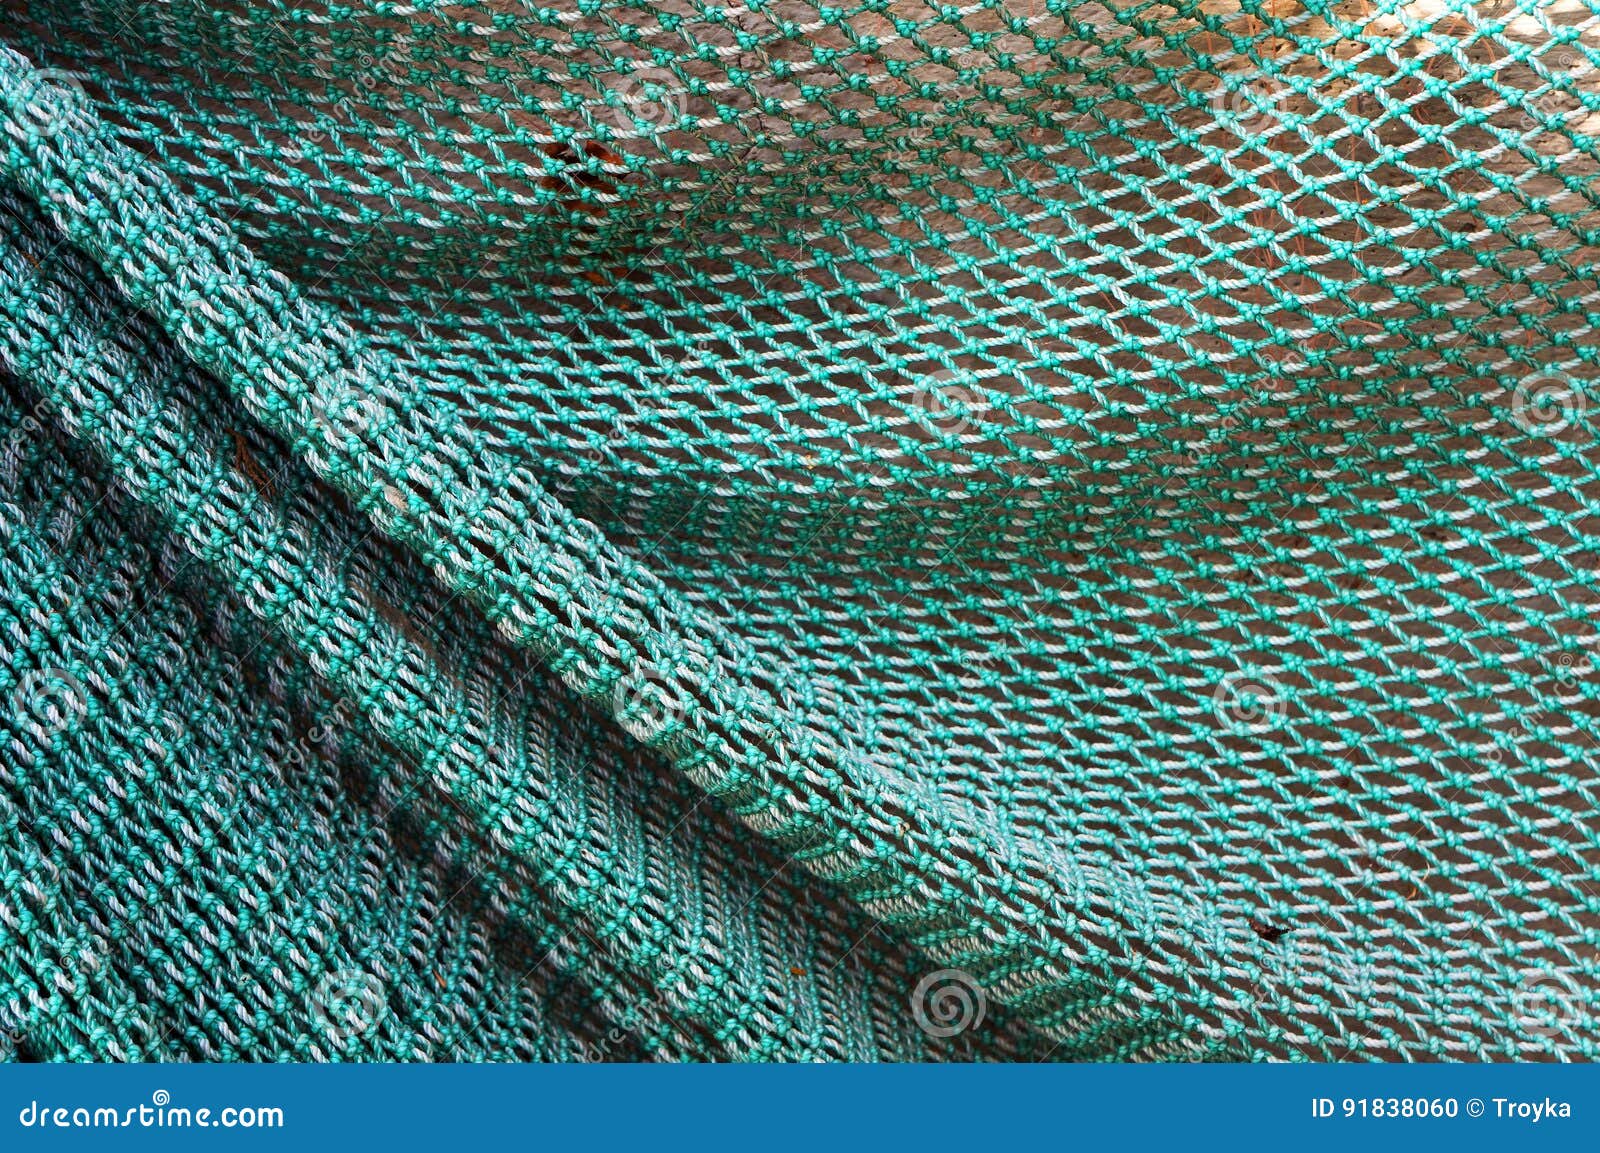 Textura de la red de pesca foto de archivo. Imagen de cuerda - 91838060